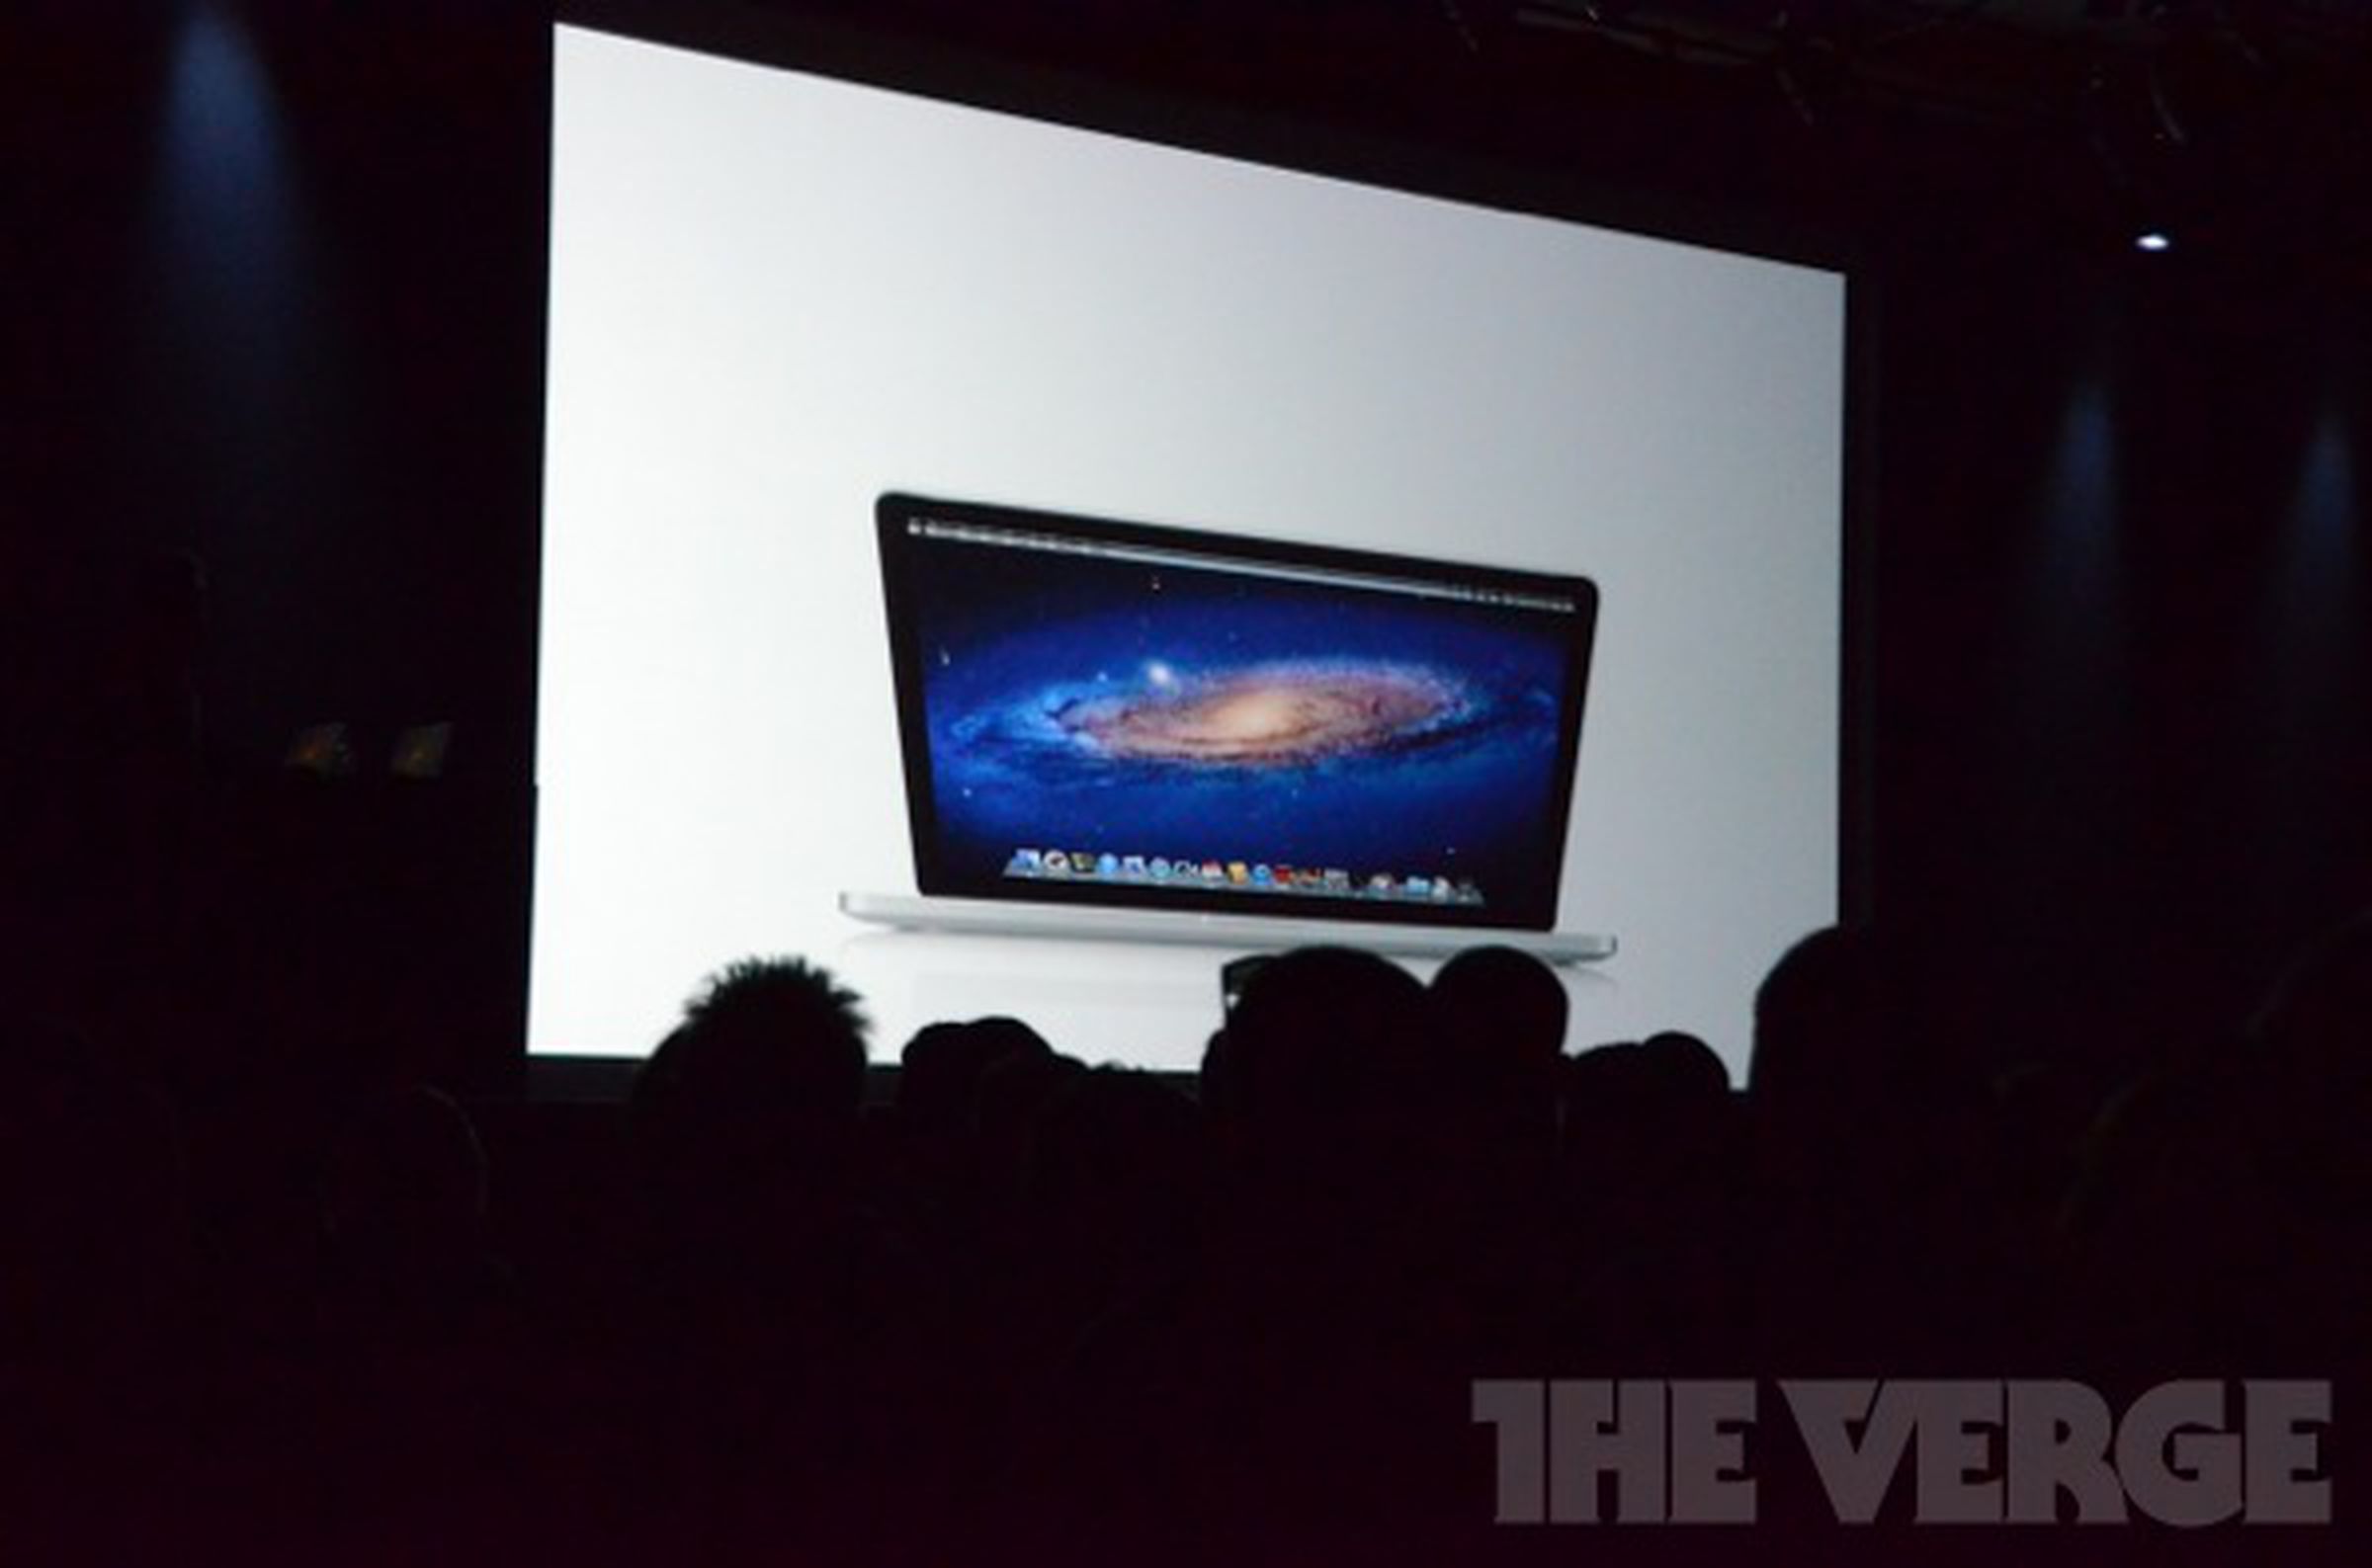 Next generation MacBook Pro liveblog photos